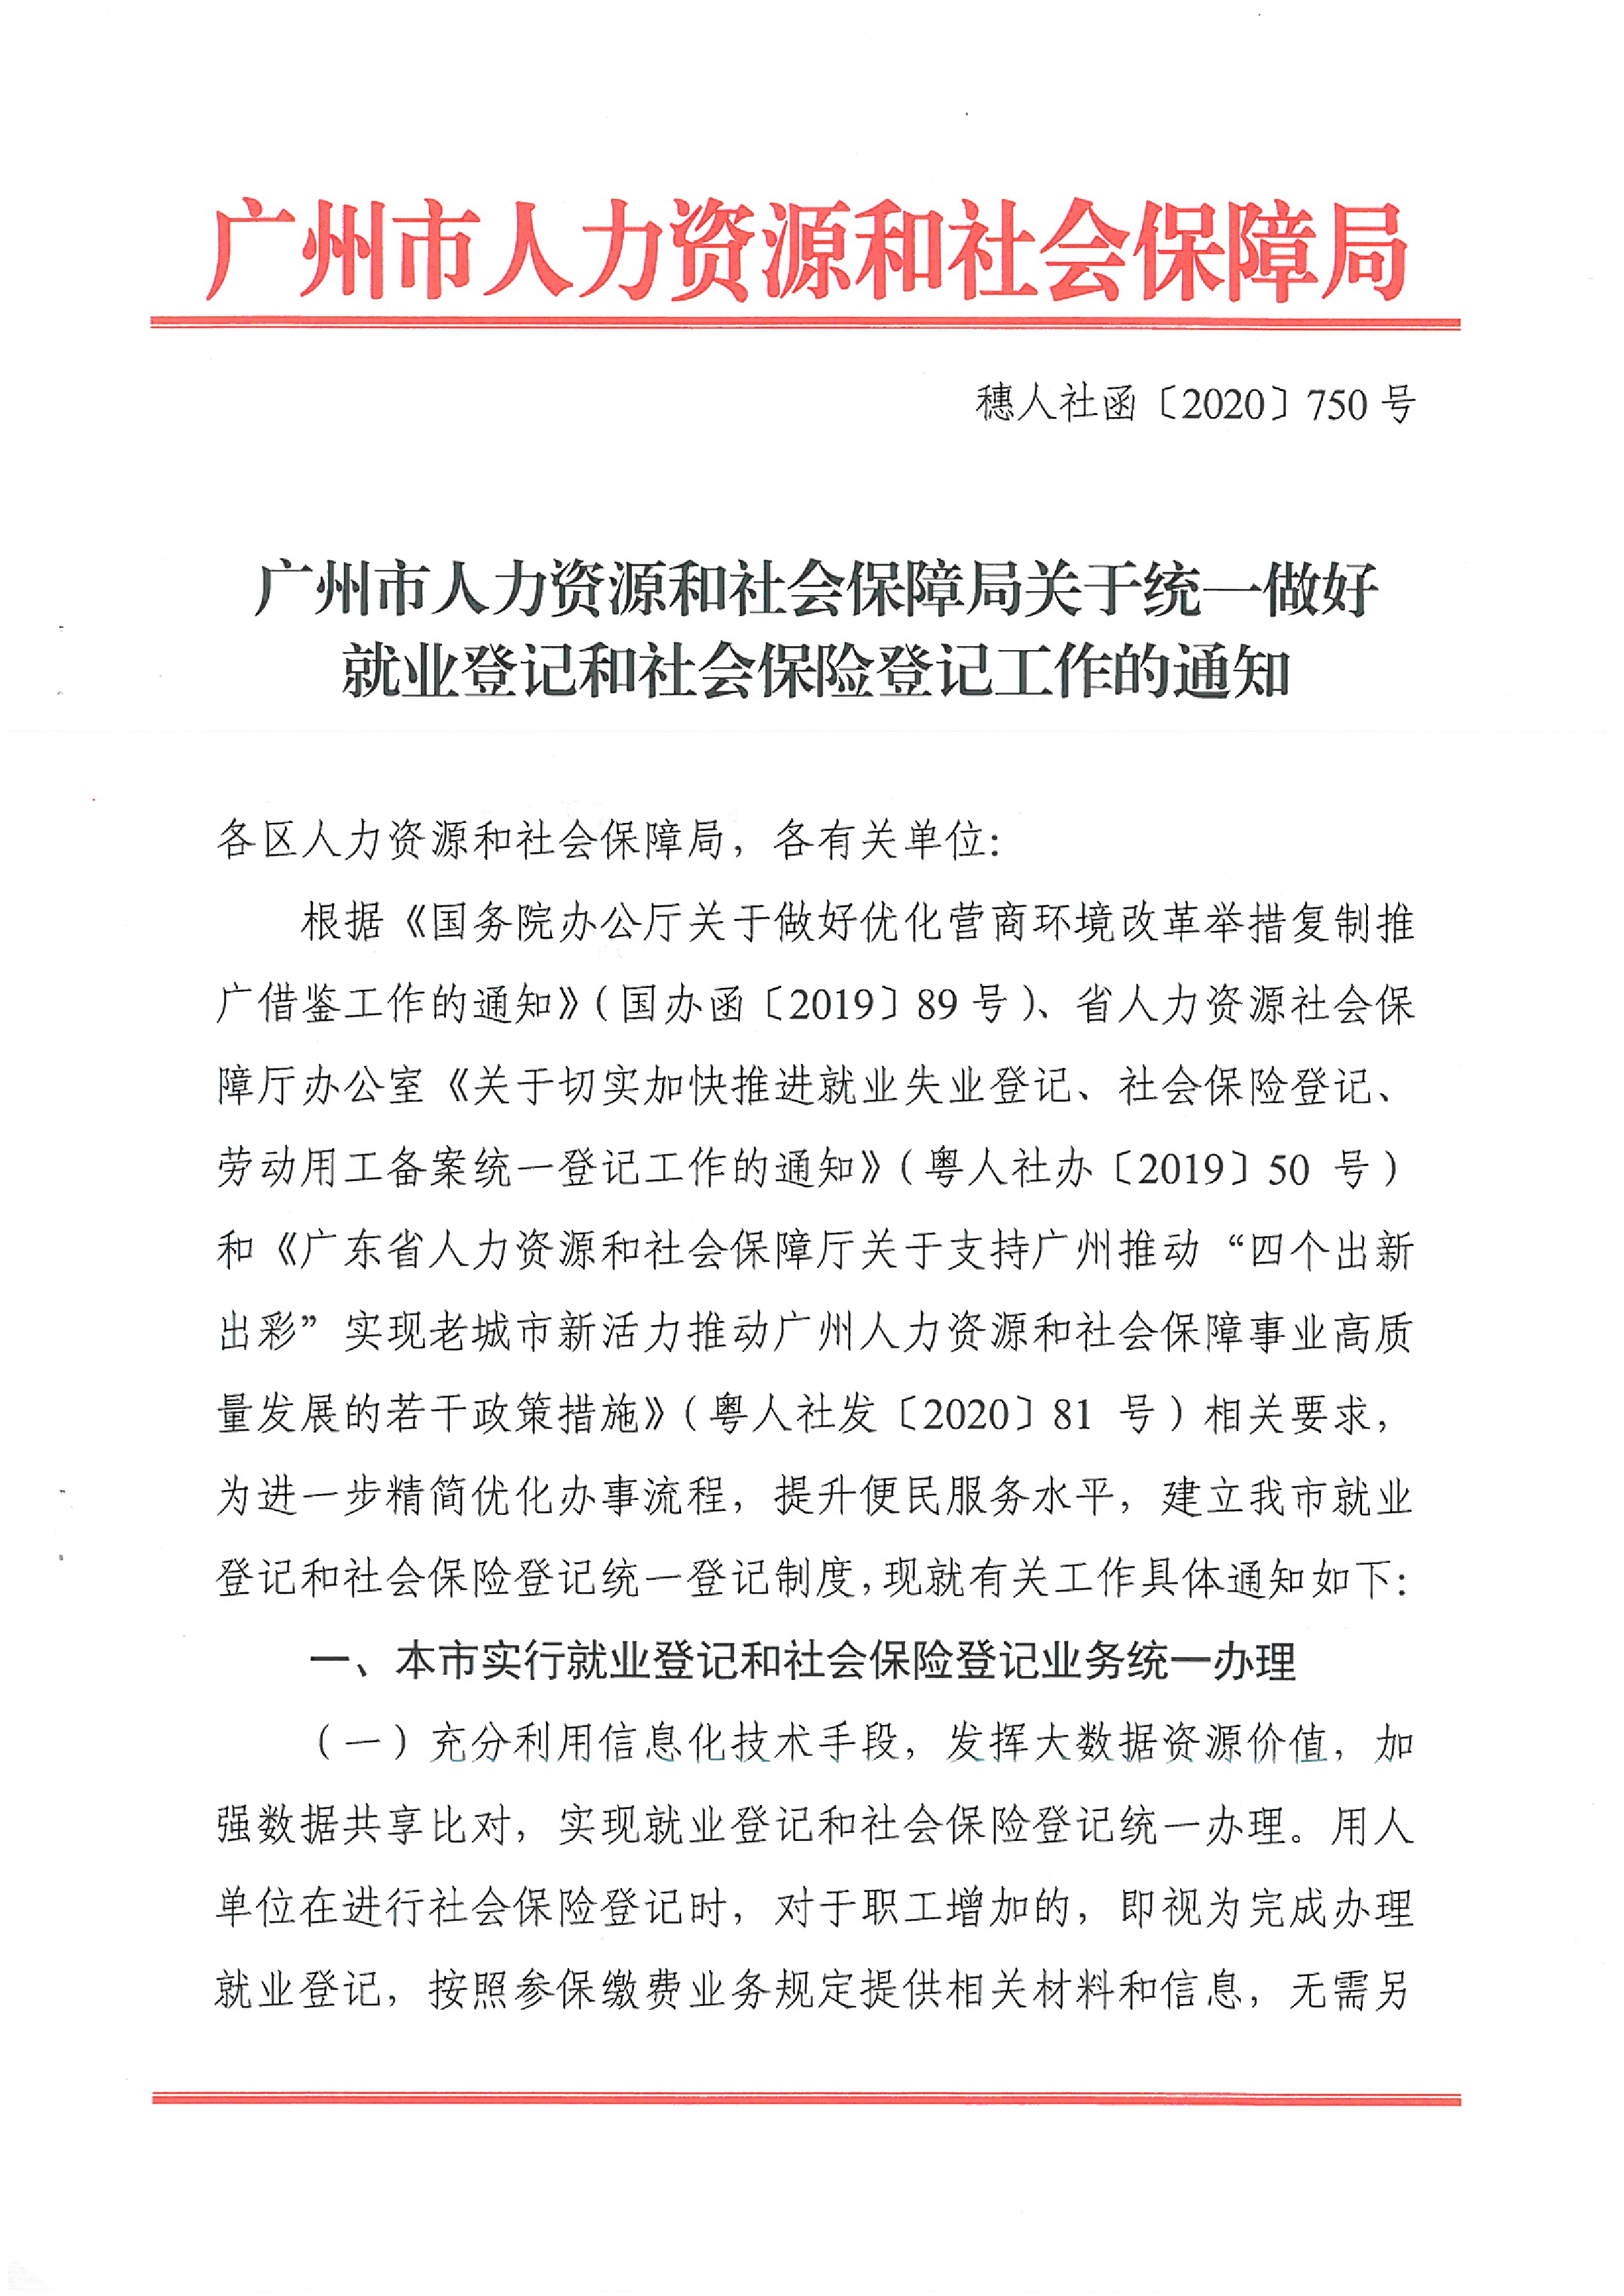 广州市人力资源和社会保障局关于统一做好就业登记和社会保险登记工作的通知（穗人社函〔2020〕750号）0000.jpg